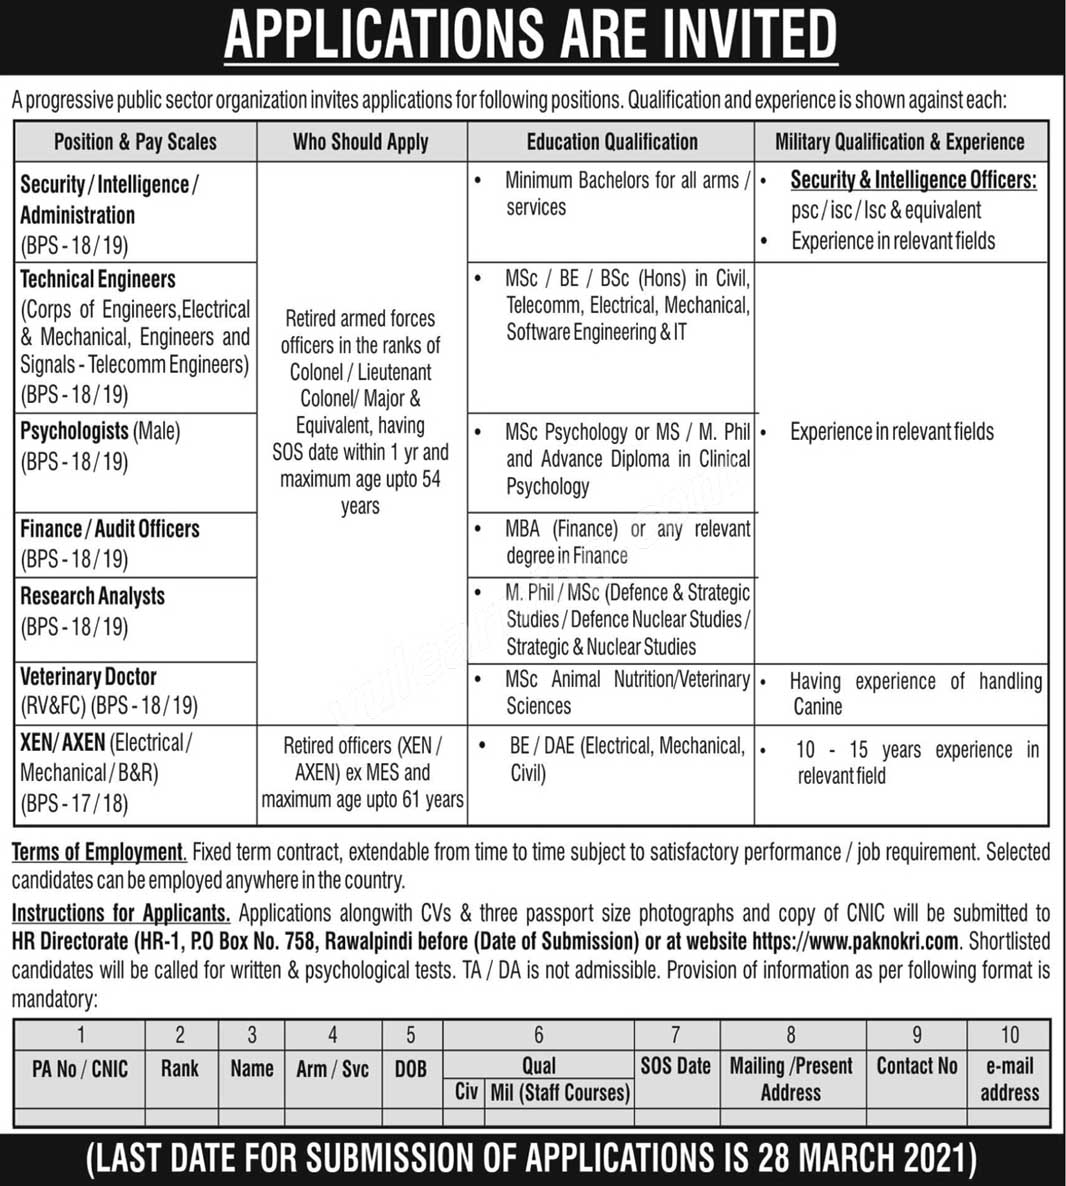 PO Box 758 Rawalpindi Jobs February 2021 Apply Online www.paknokri.com